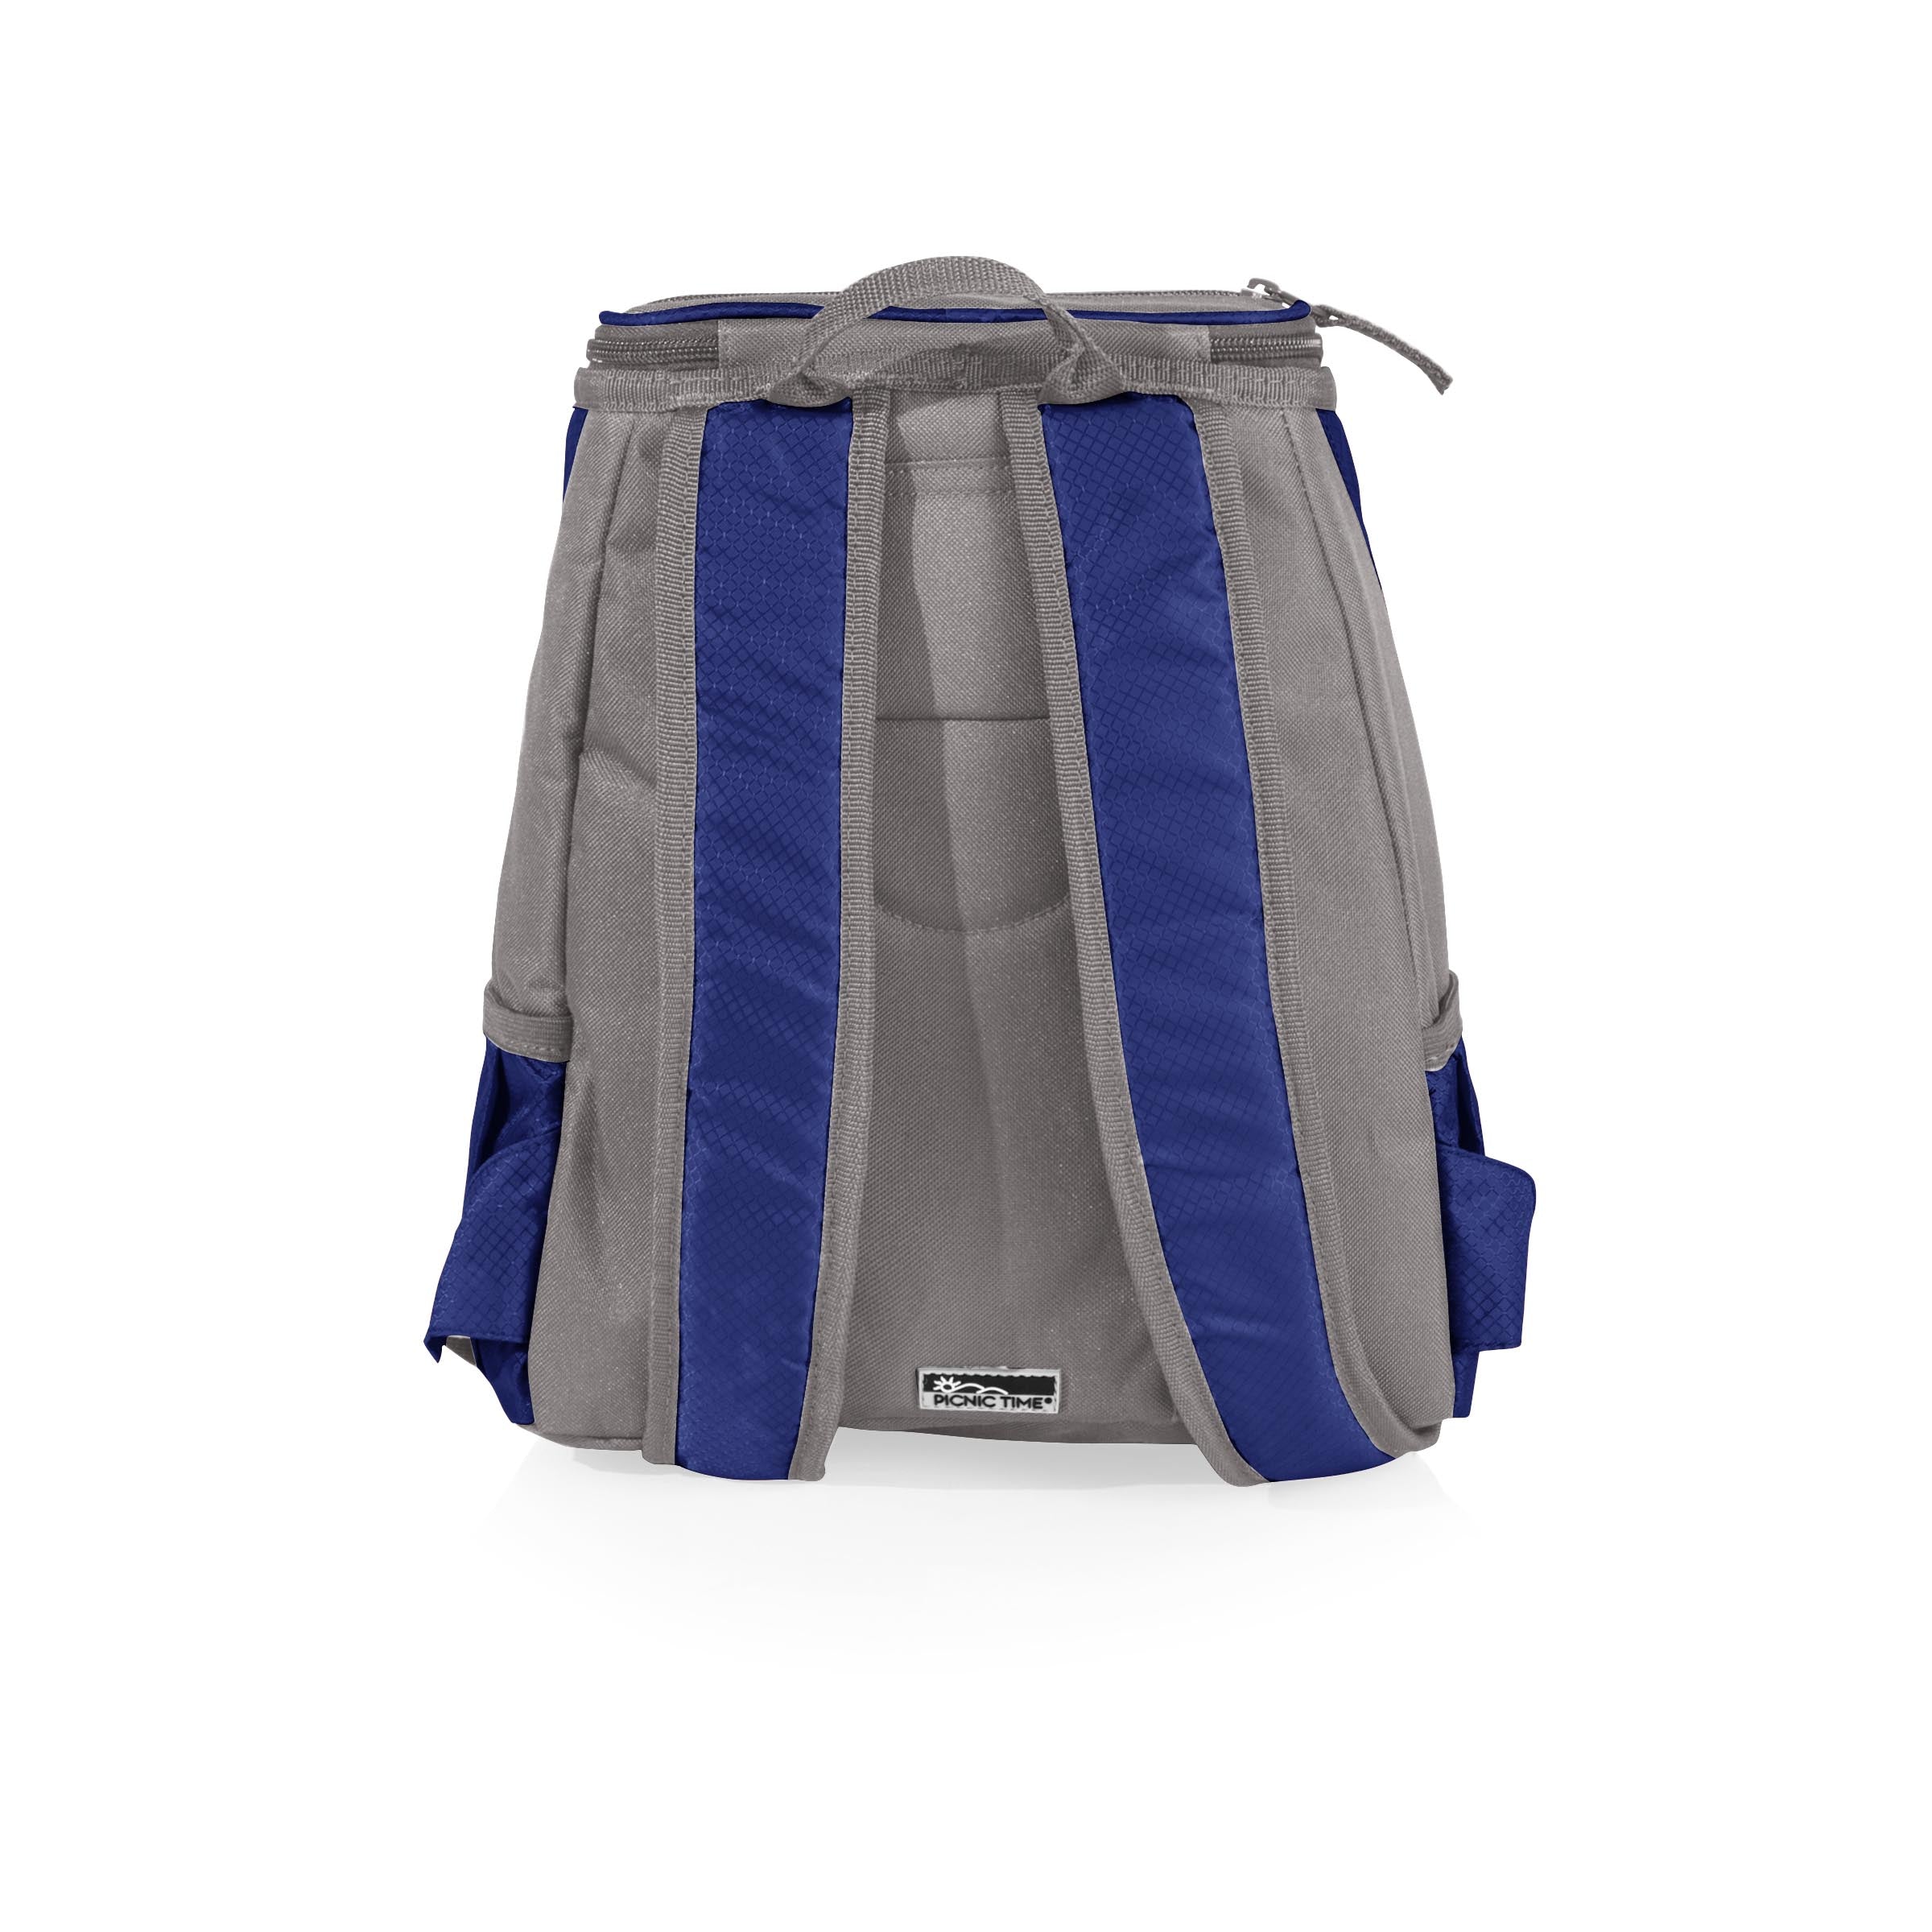 Cal Bears - PTX Backpack Cooler